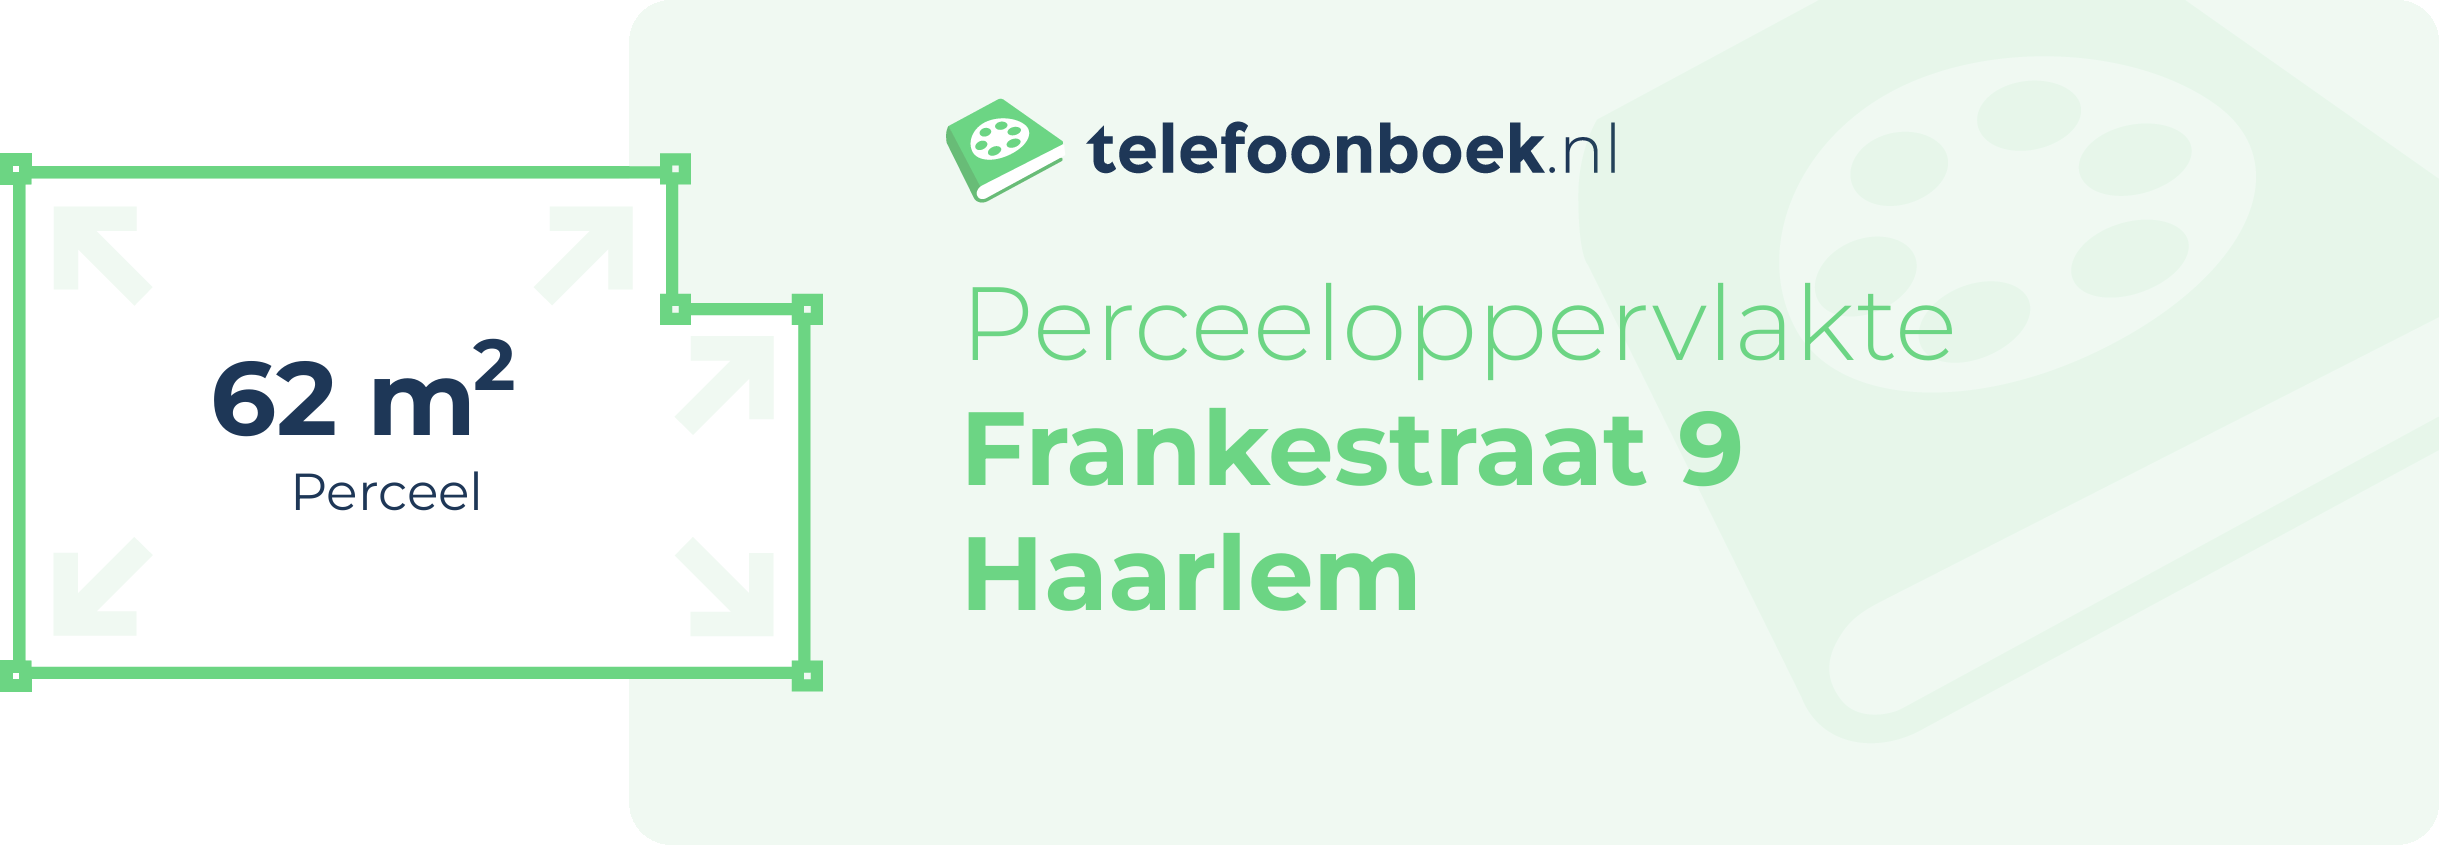 Perceeloppervlakte Frankestraat 9 Haarlem